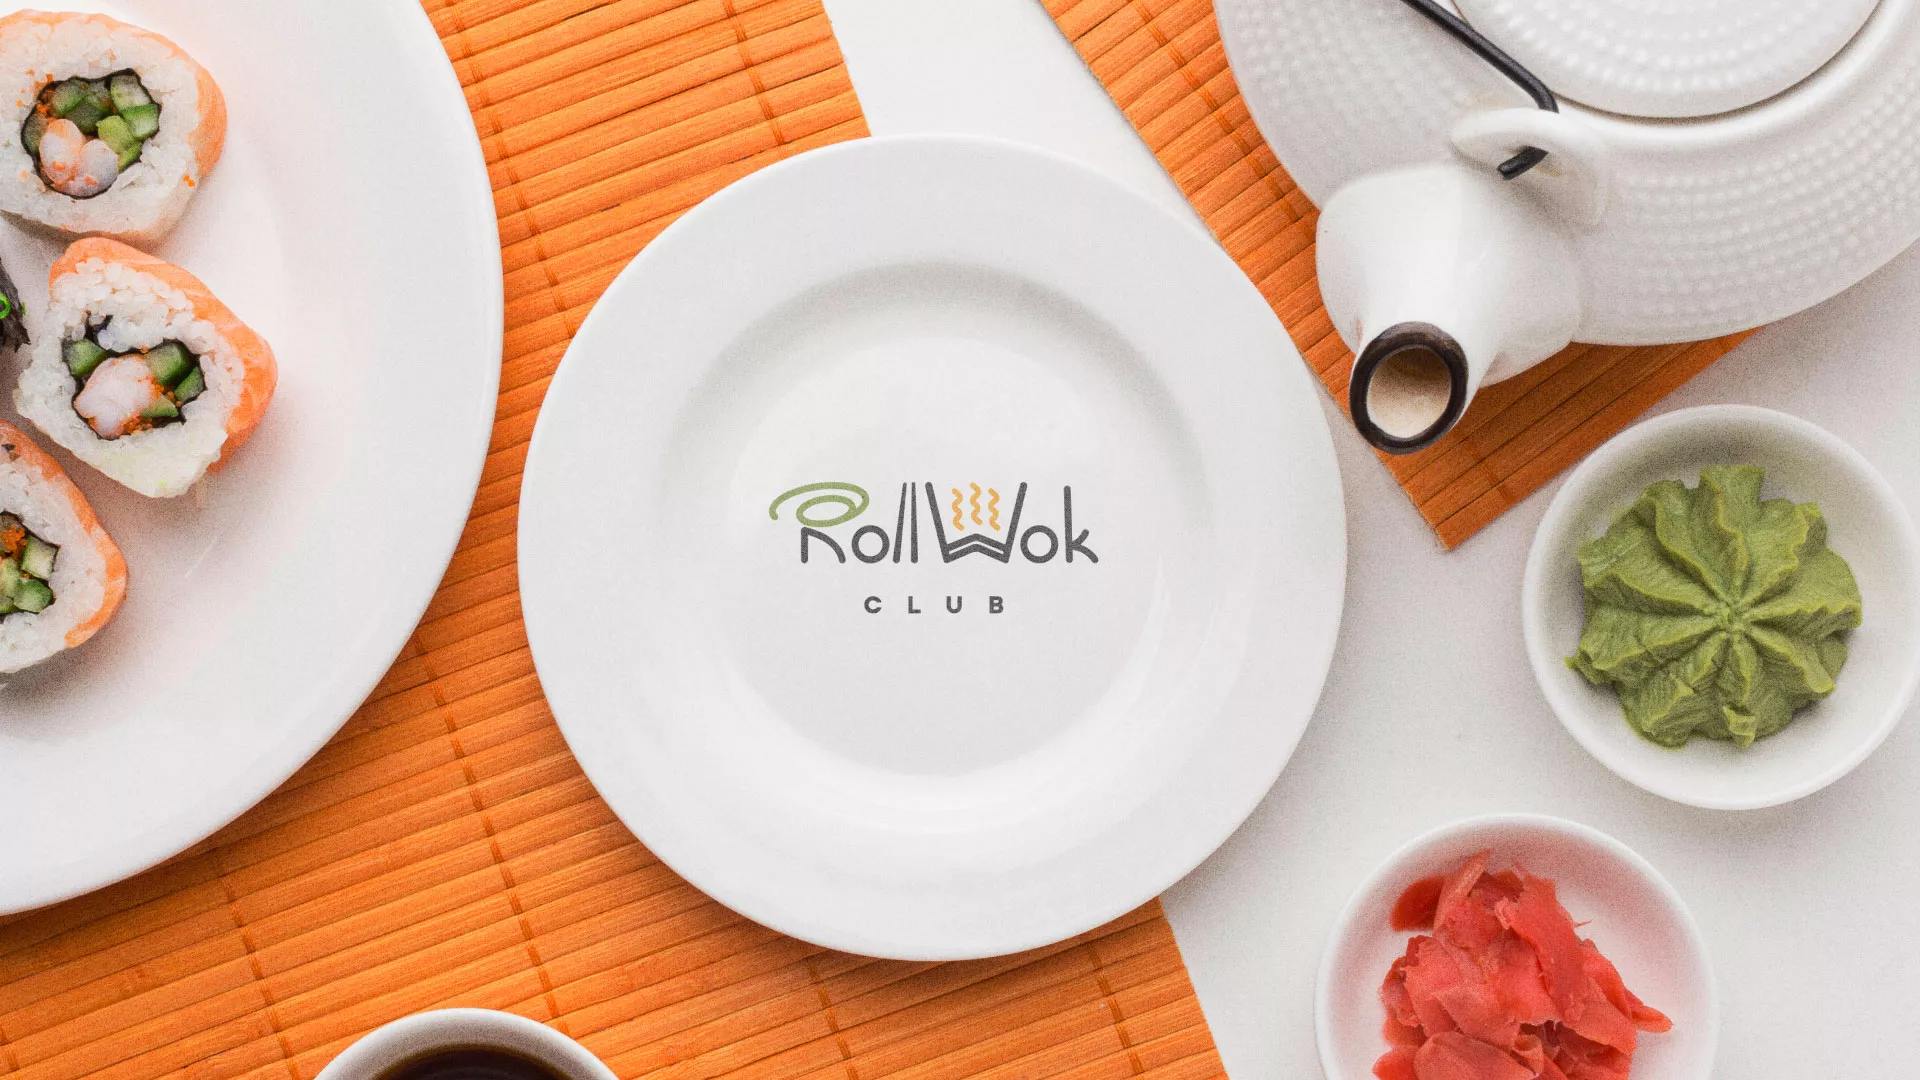 Разработка логотипа и фирменного стиля суши-бара «Roll Wok Club» в Костроме